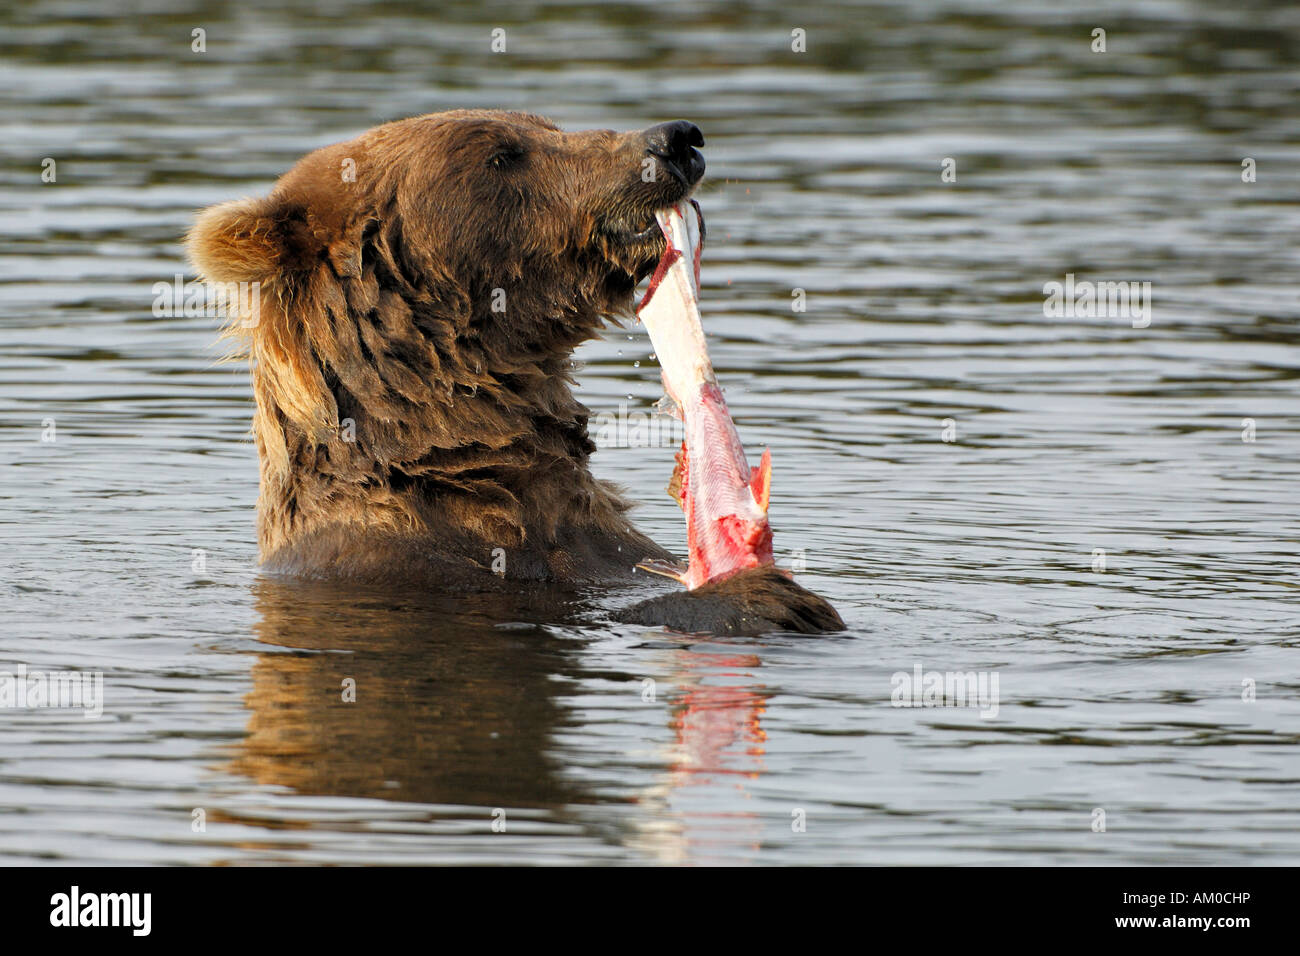 Alaska brown bear (Ursus arctos) eating salmon Stock Photo